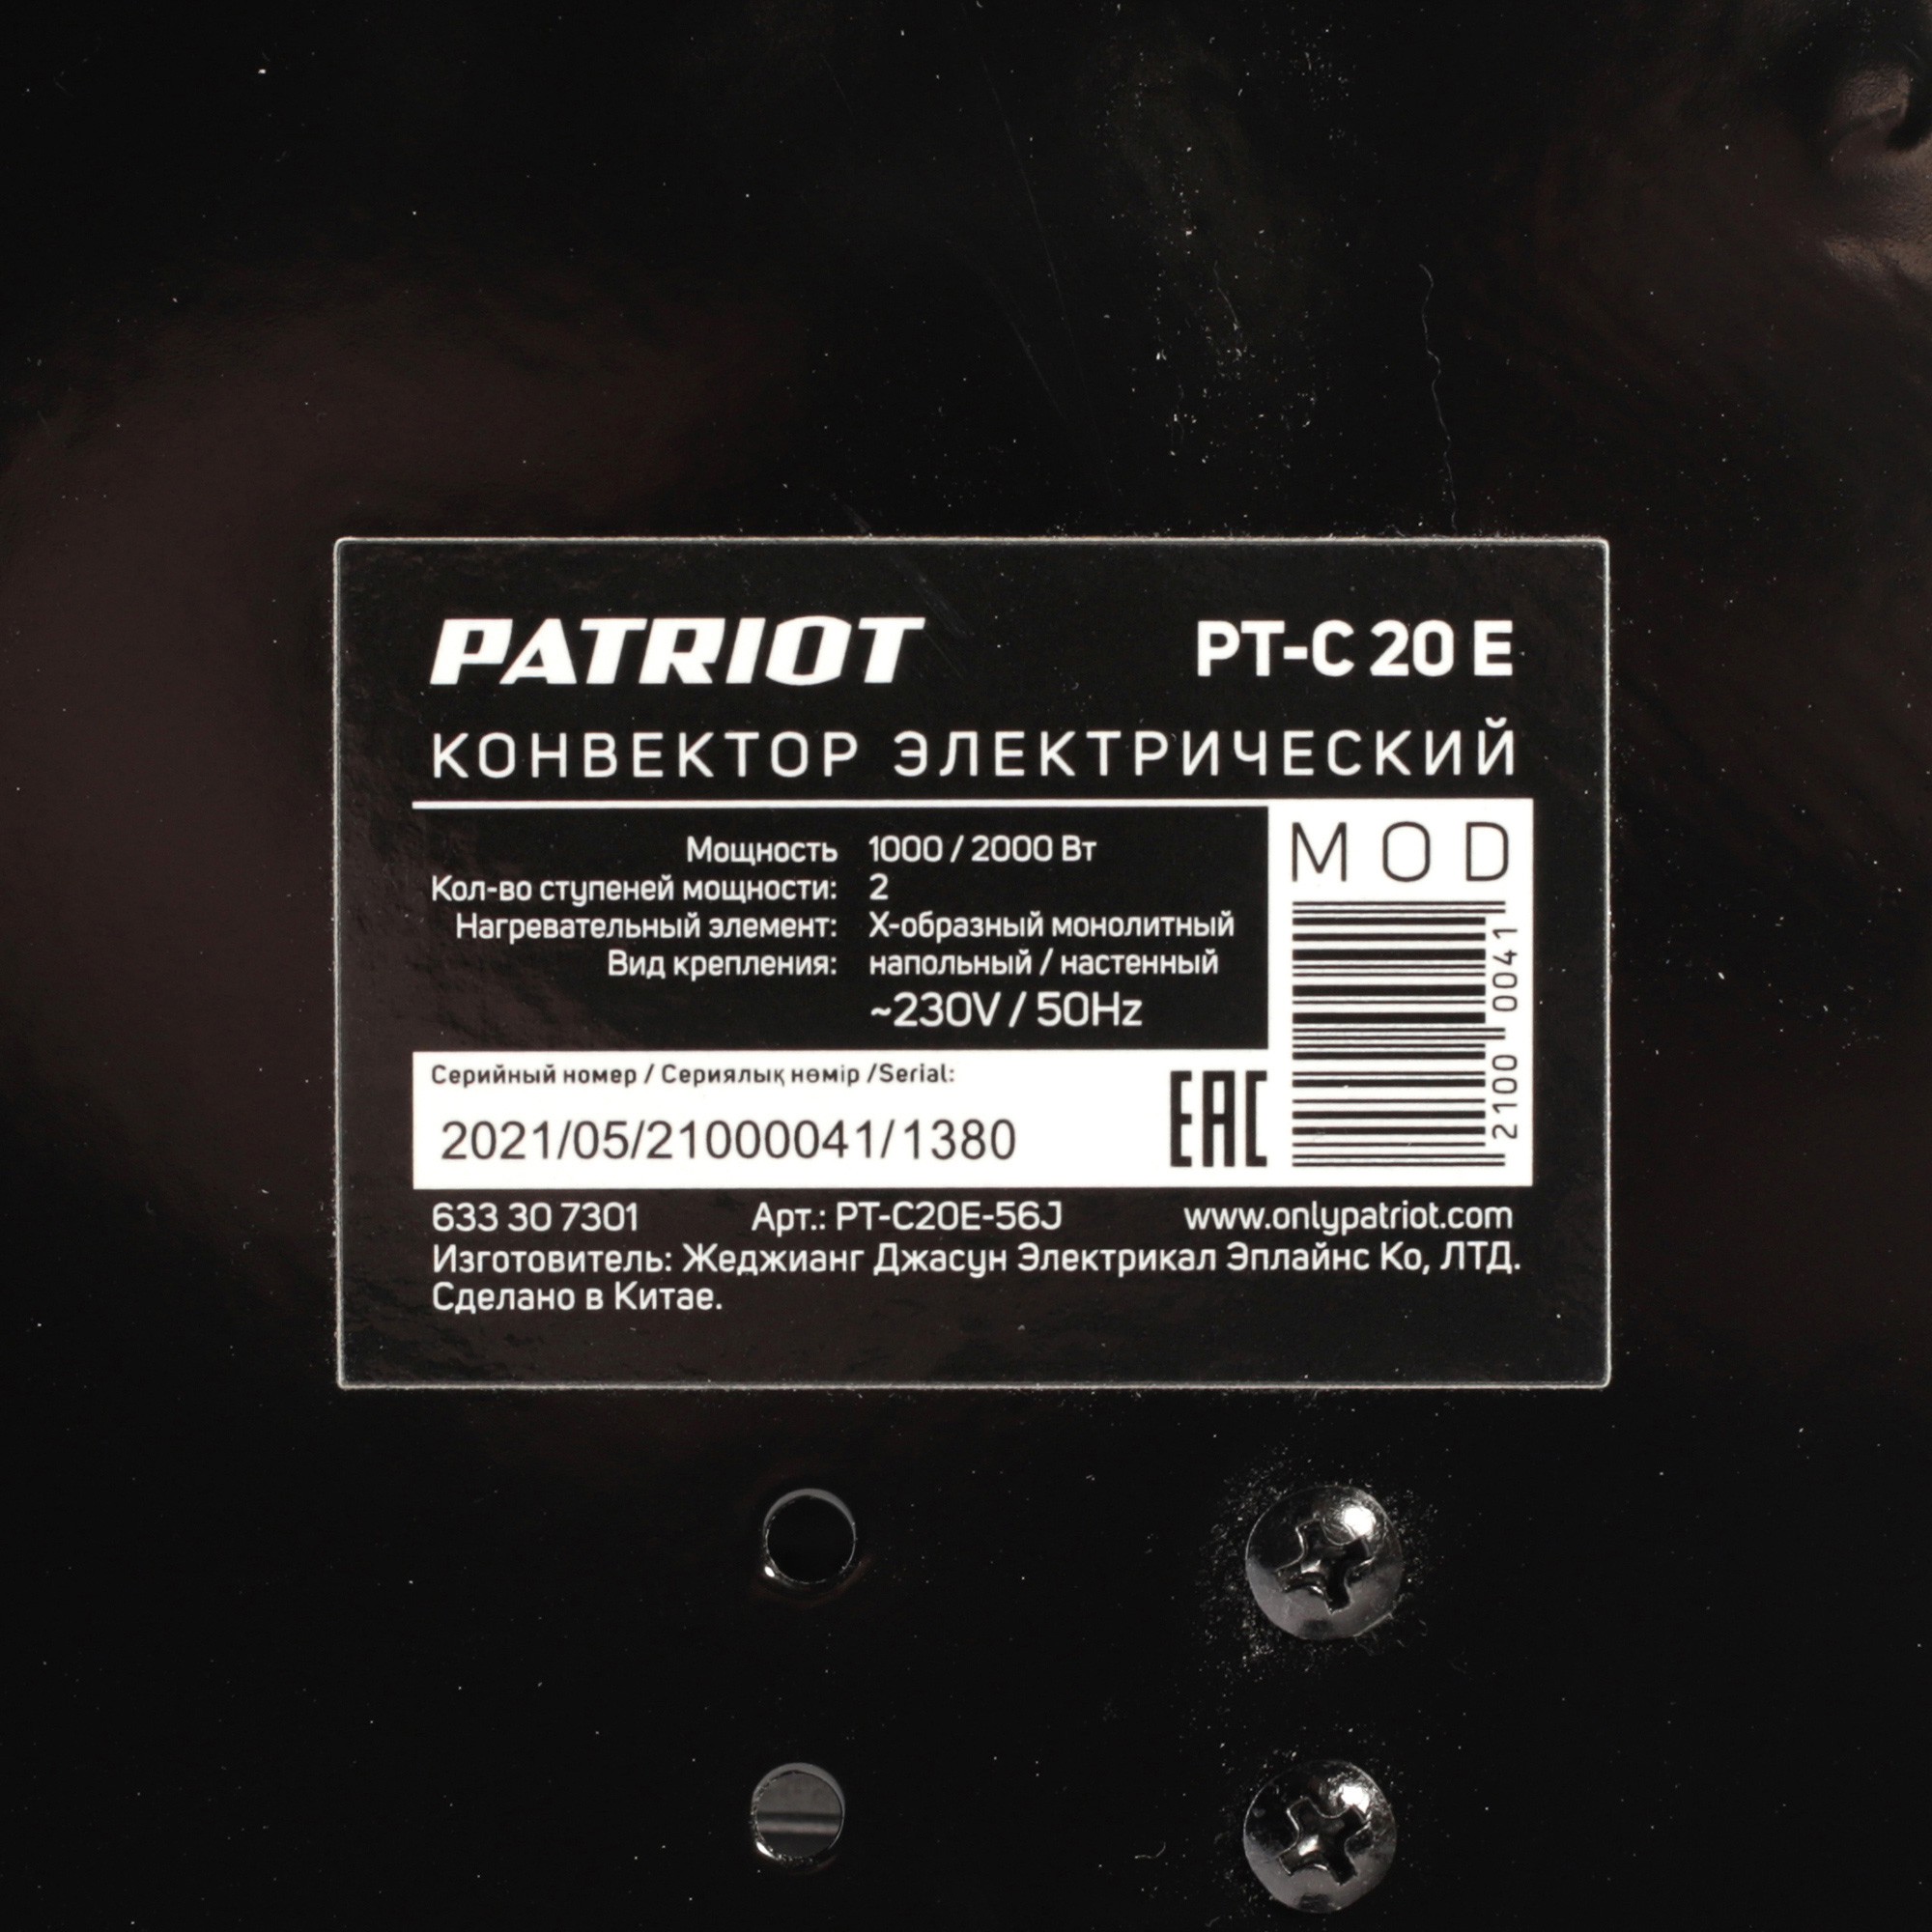 Конвектор электрический Patriot PT-C 20 E